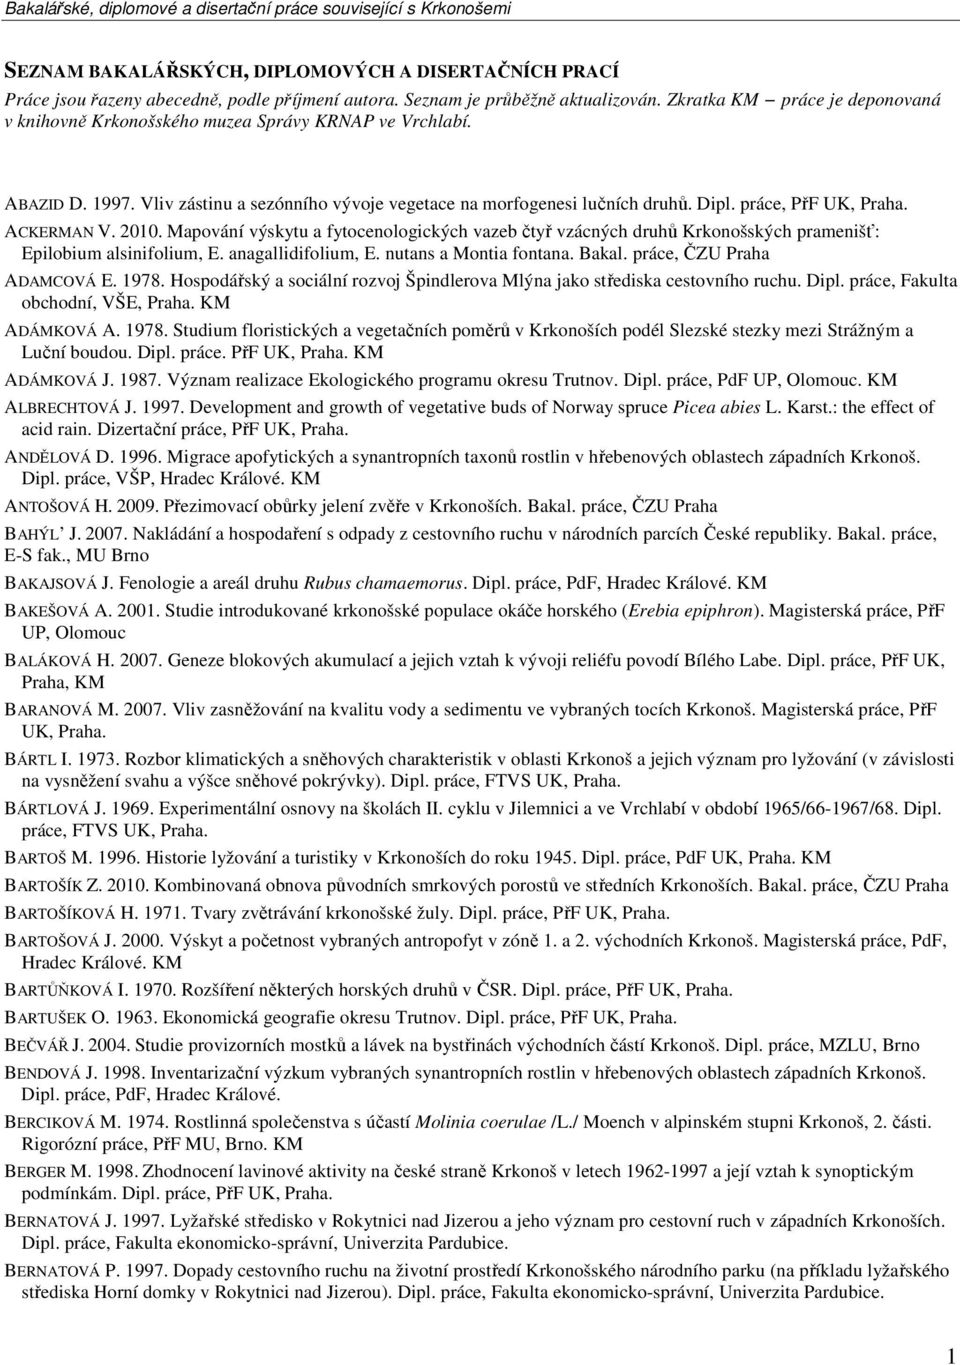 práce, PřF UK, ACKERMAN V. 2010. Mapování výskytu a fytocenologických vazeb čtyř vzácných druhů Krkonošských pramenišť: Epilobium alsinifolium, E. anagallidifolium, E. nutans a Montia fontana. Bakal.